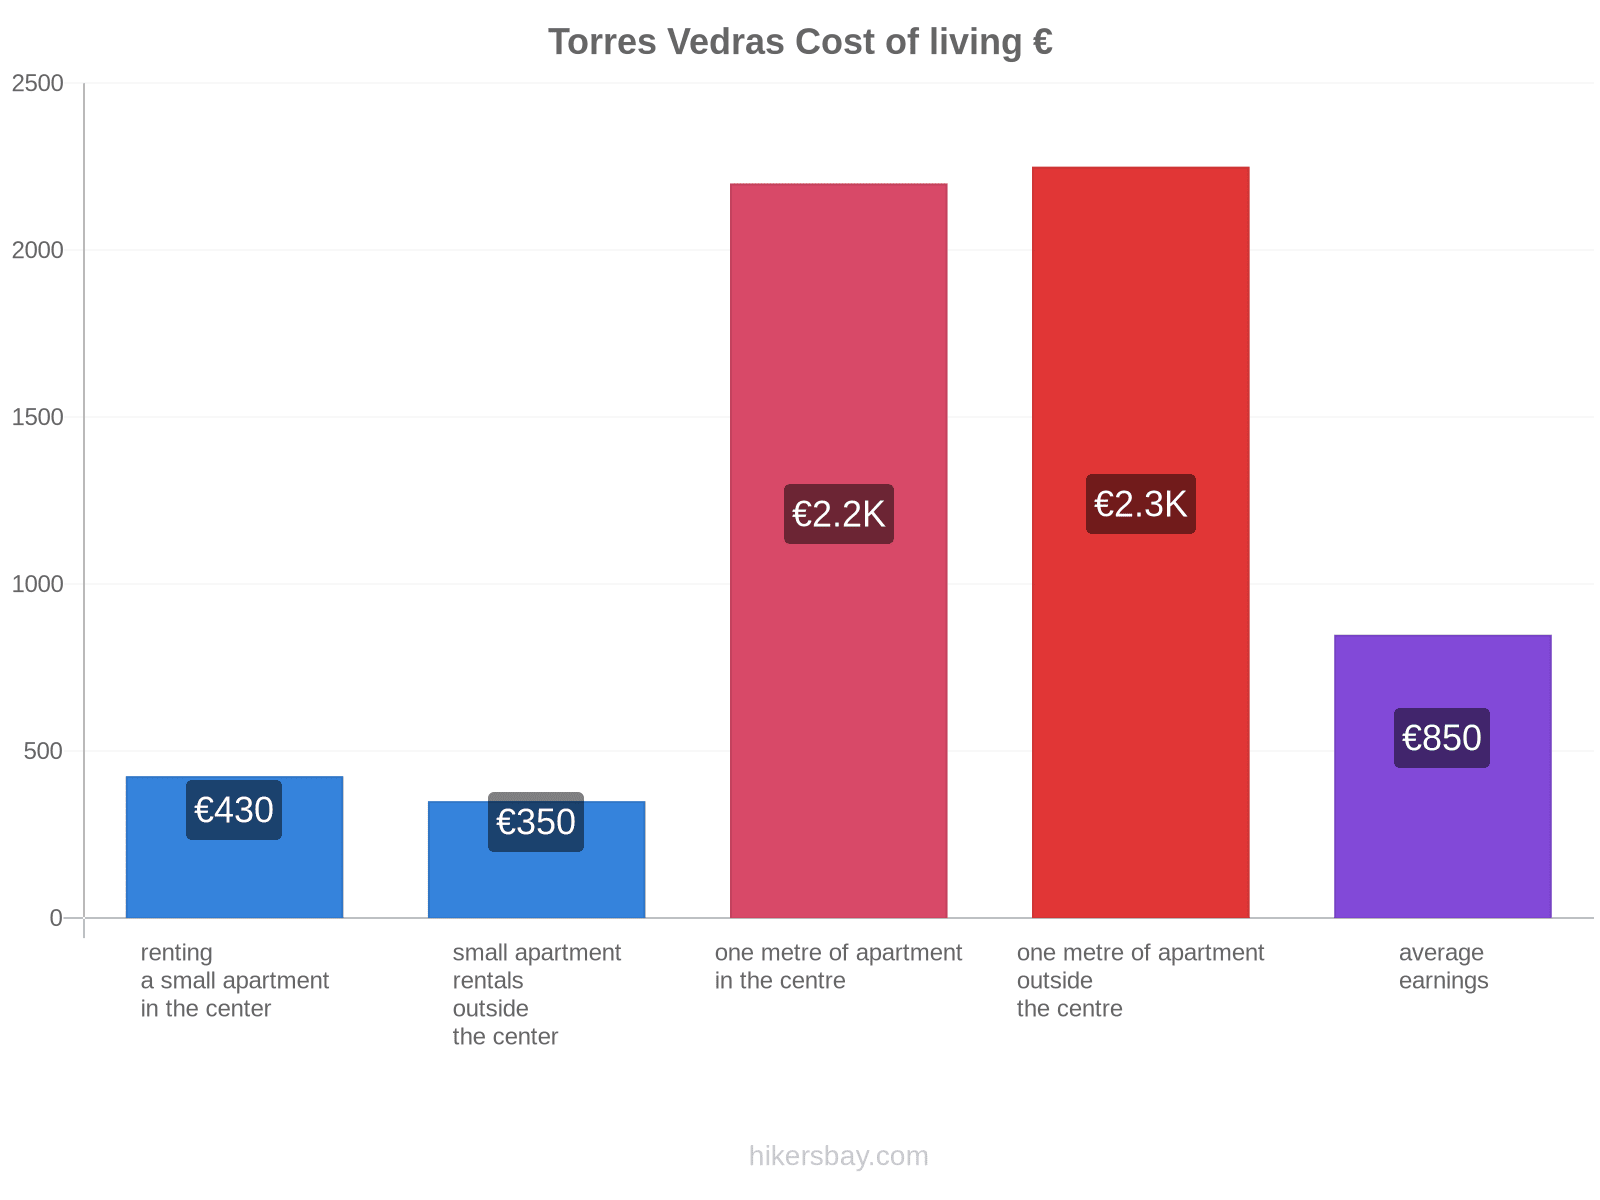 Torres Vedras cost of living hikersbay.com